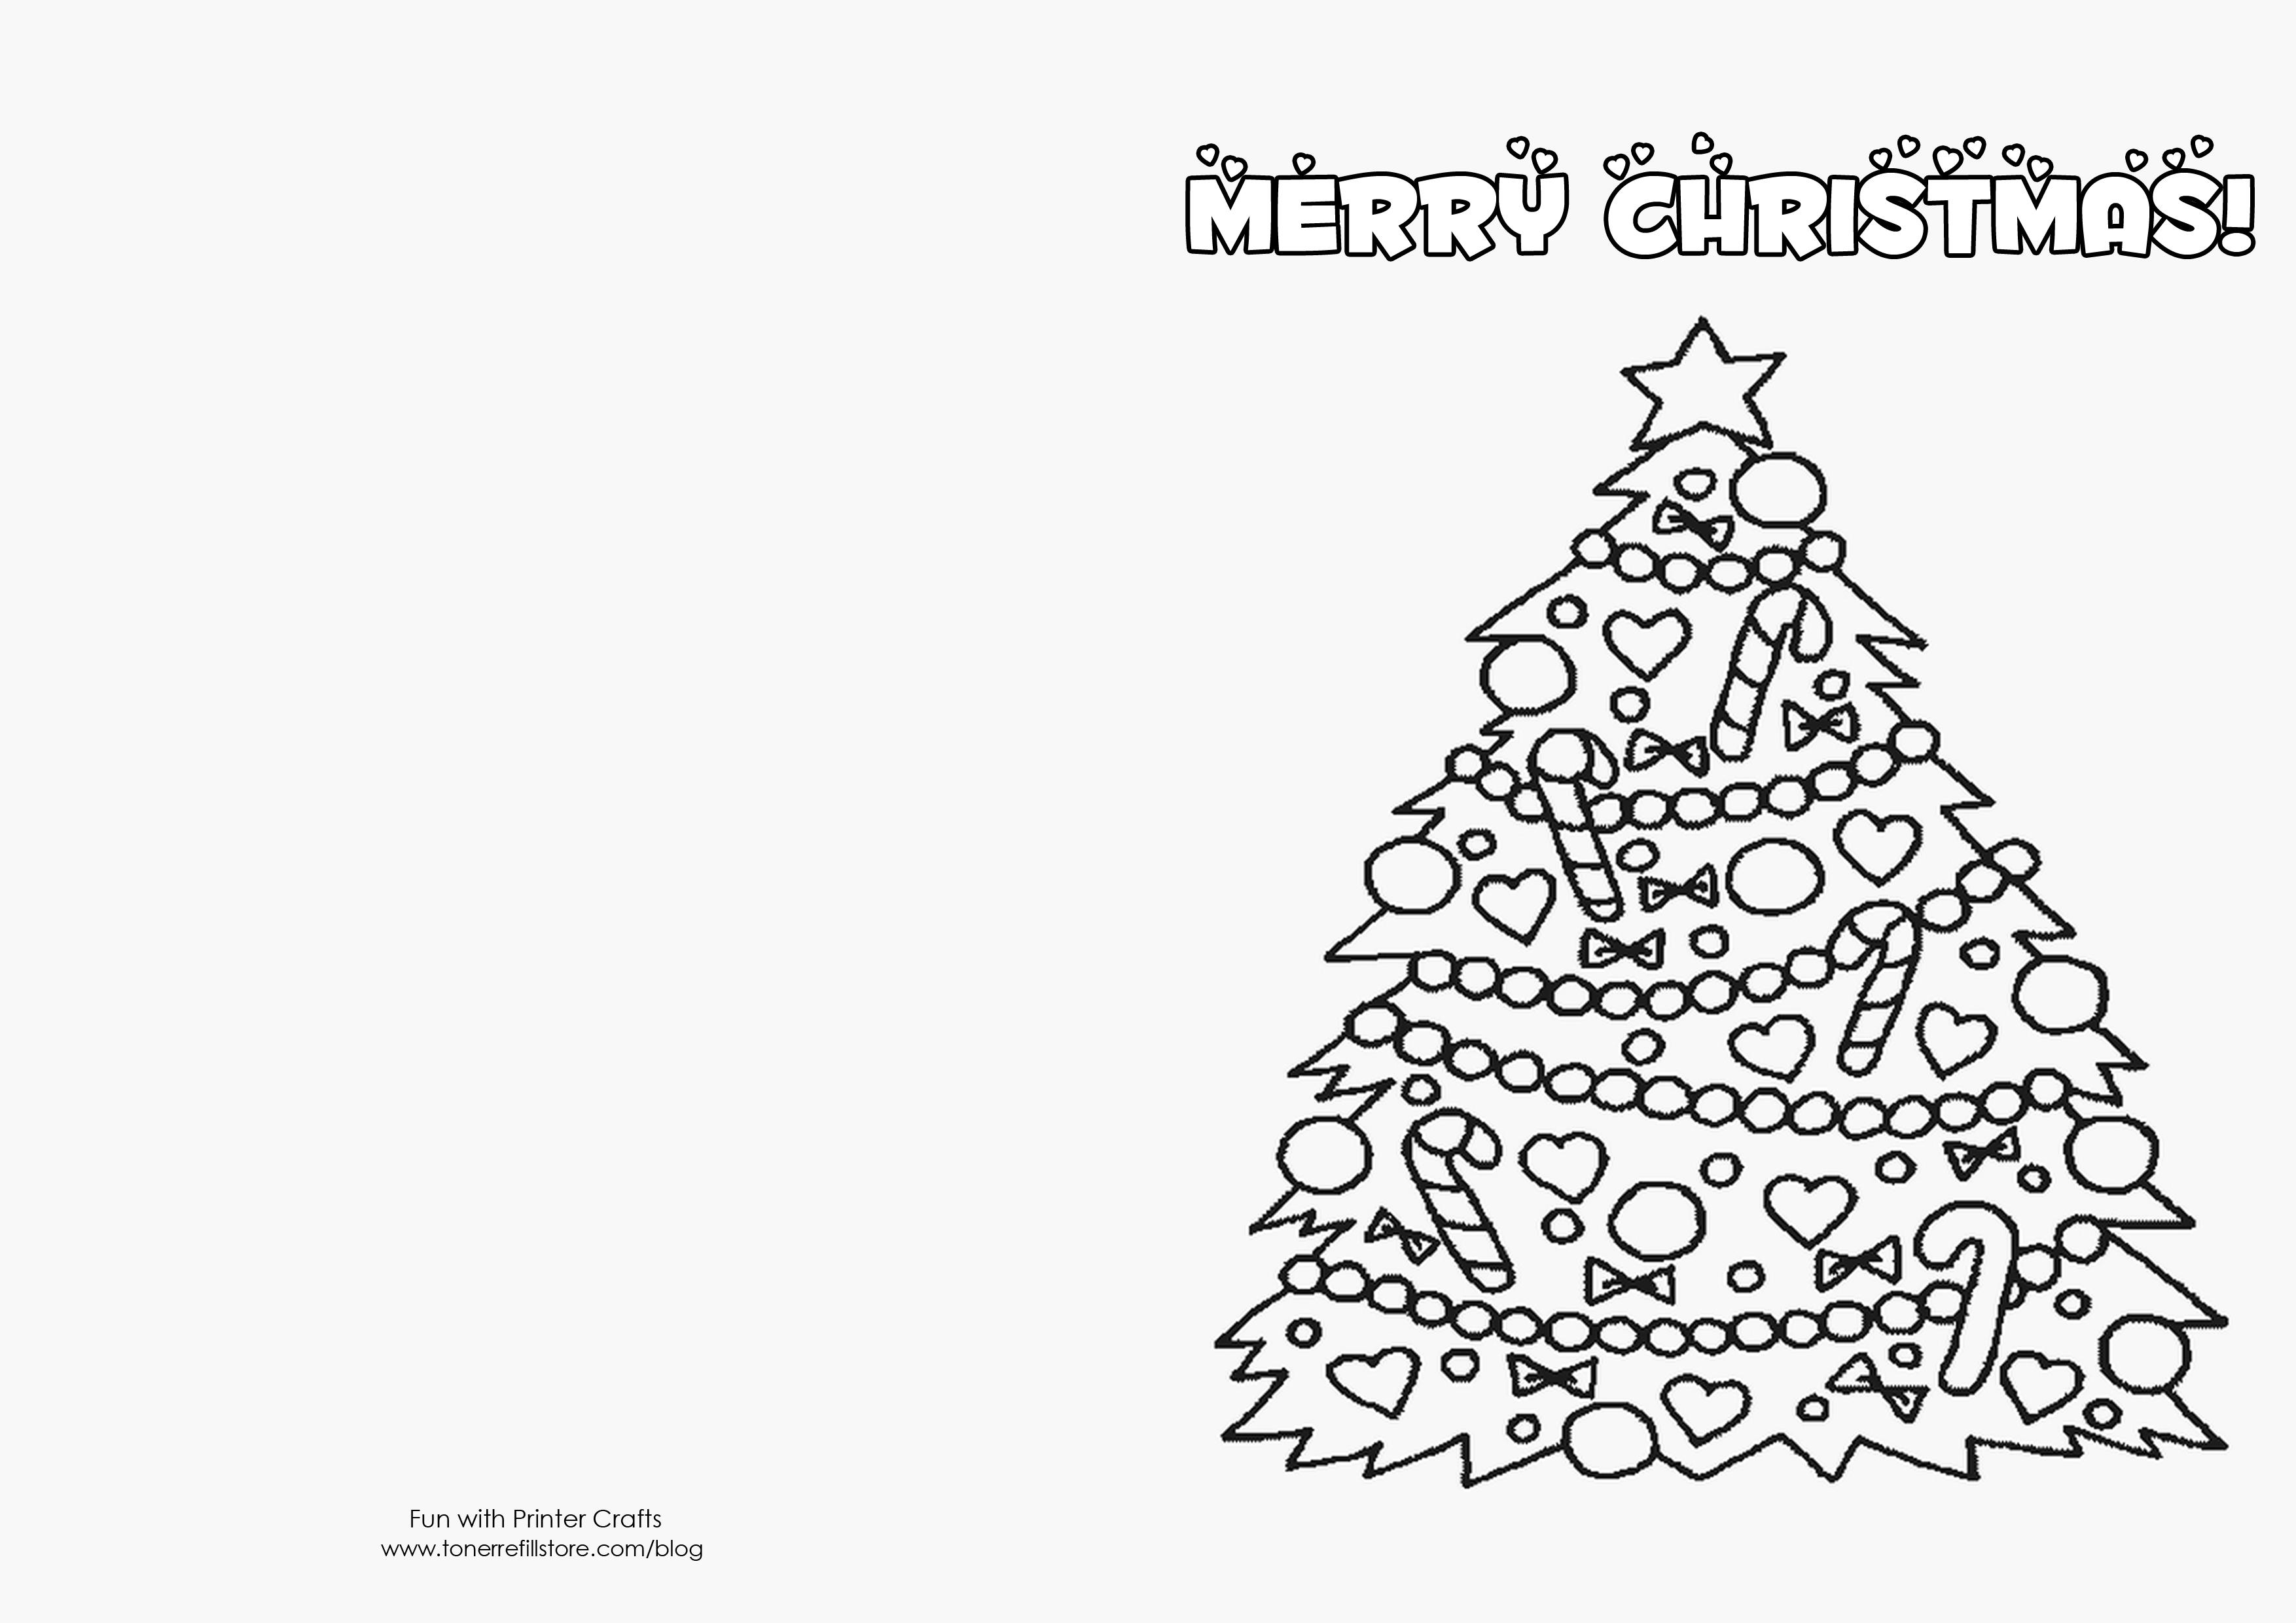 Free Printable Christmas Cards. Christmas Cards Online Free - Free Printable Xmas Cards Online